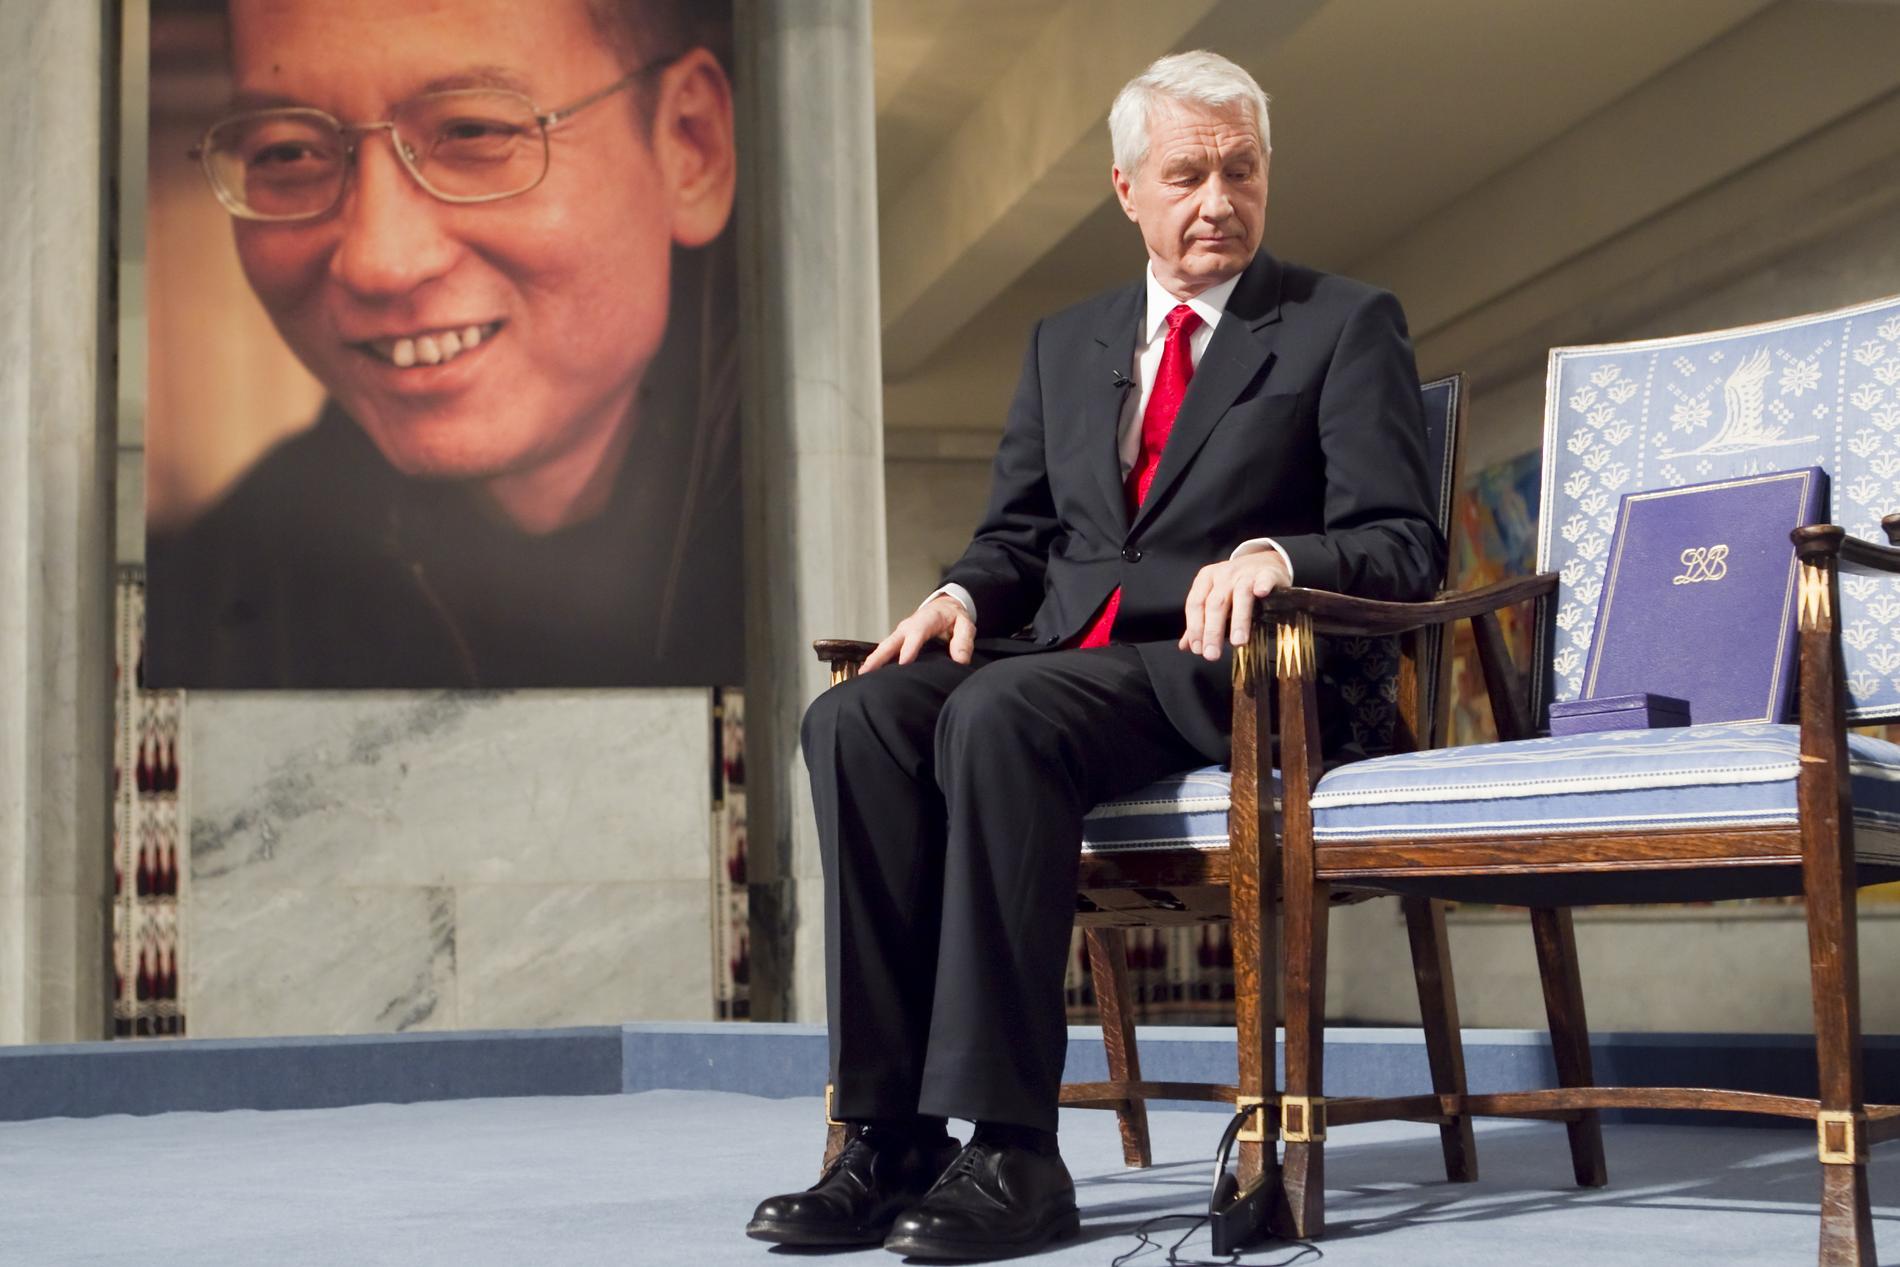 IKKE TIL STEDE: Tidligere leder av Nobelkomiteens, Thorbjørn Jagland, under fredsprisseremonien i Oslo rådhus i 2010. Liu Xiaobo var representert med en ledig stol på podiet under seremonien, ettersom han satt fengslet i Kina. 